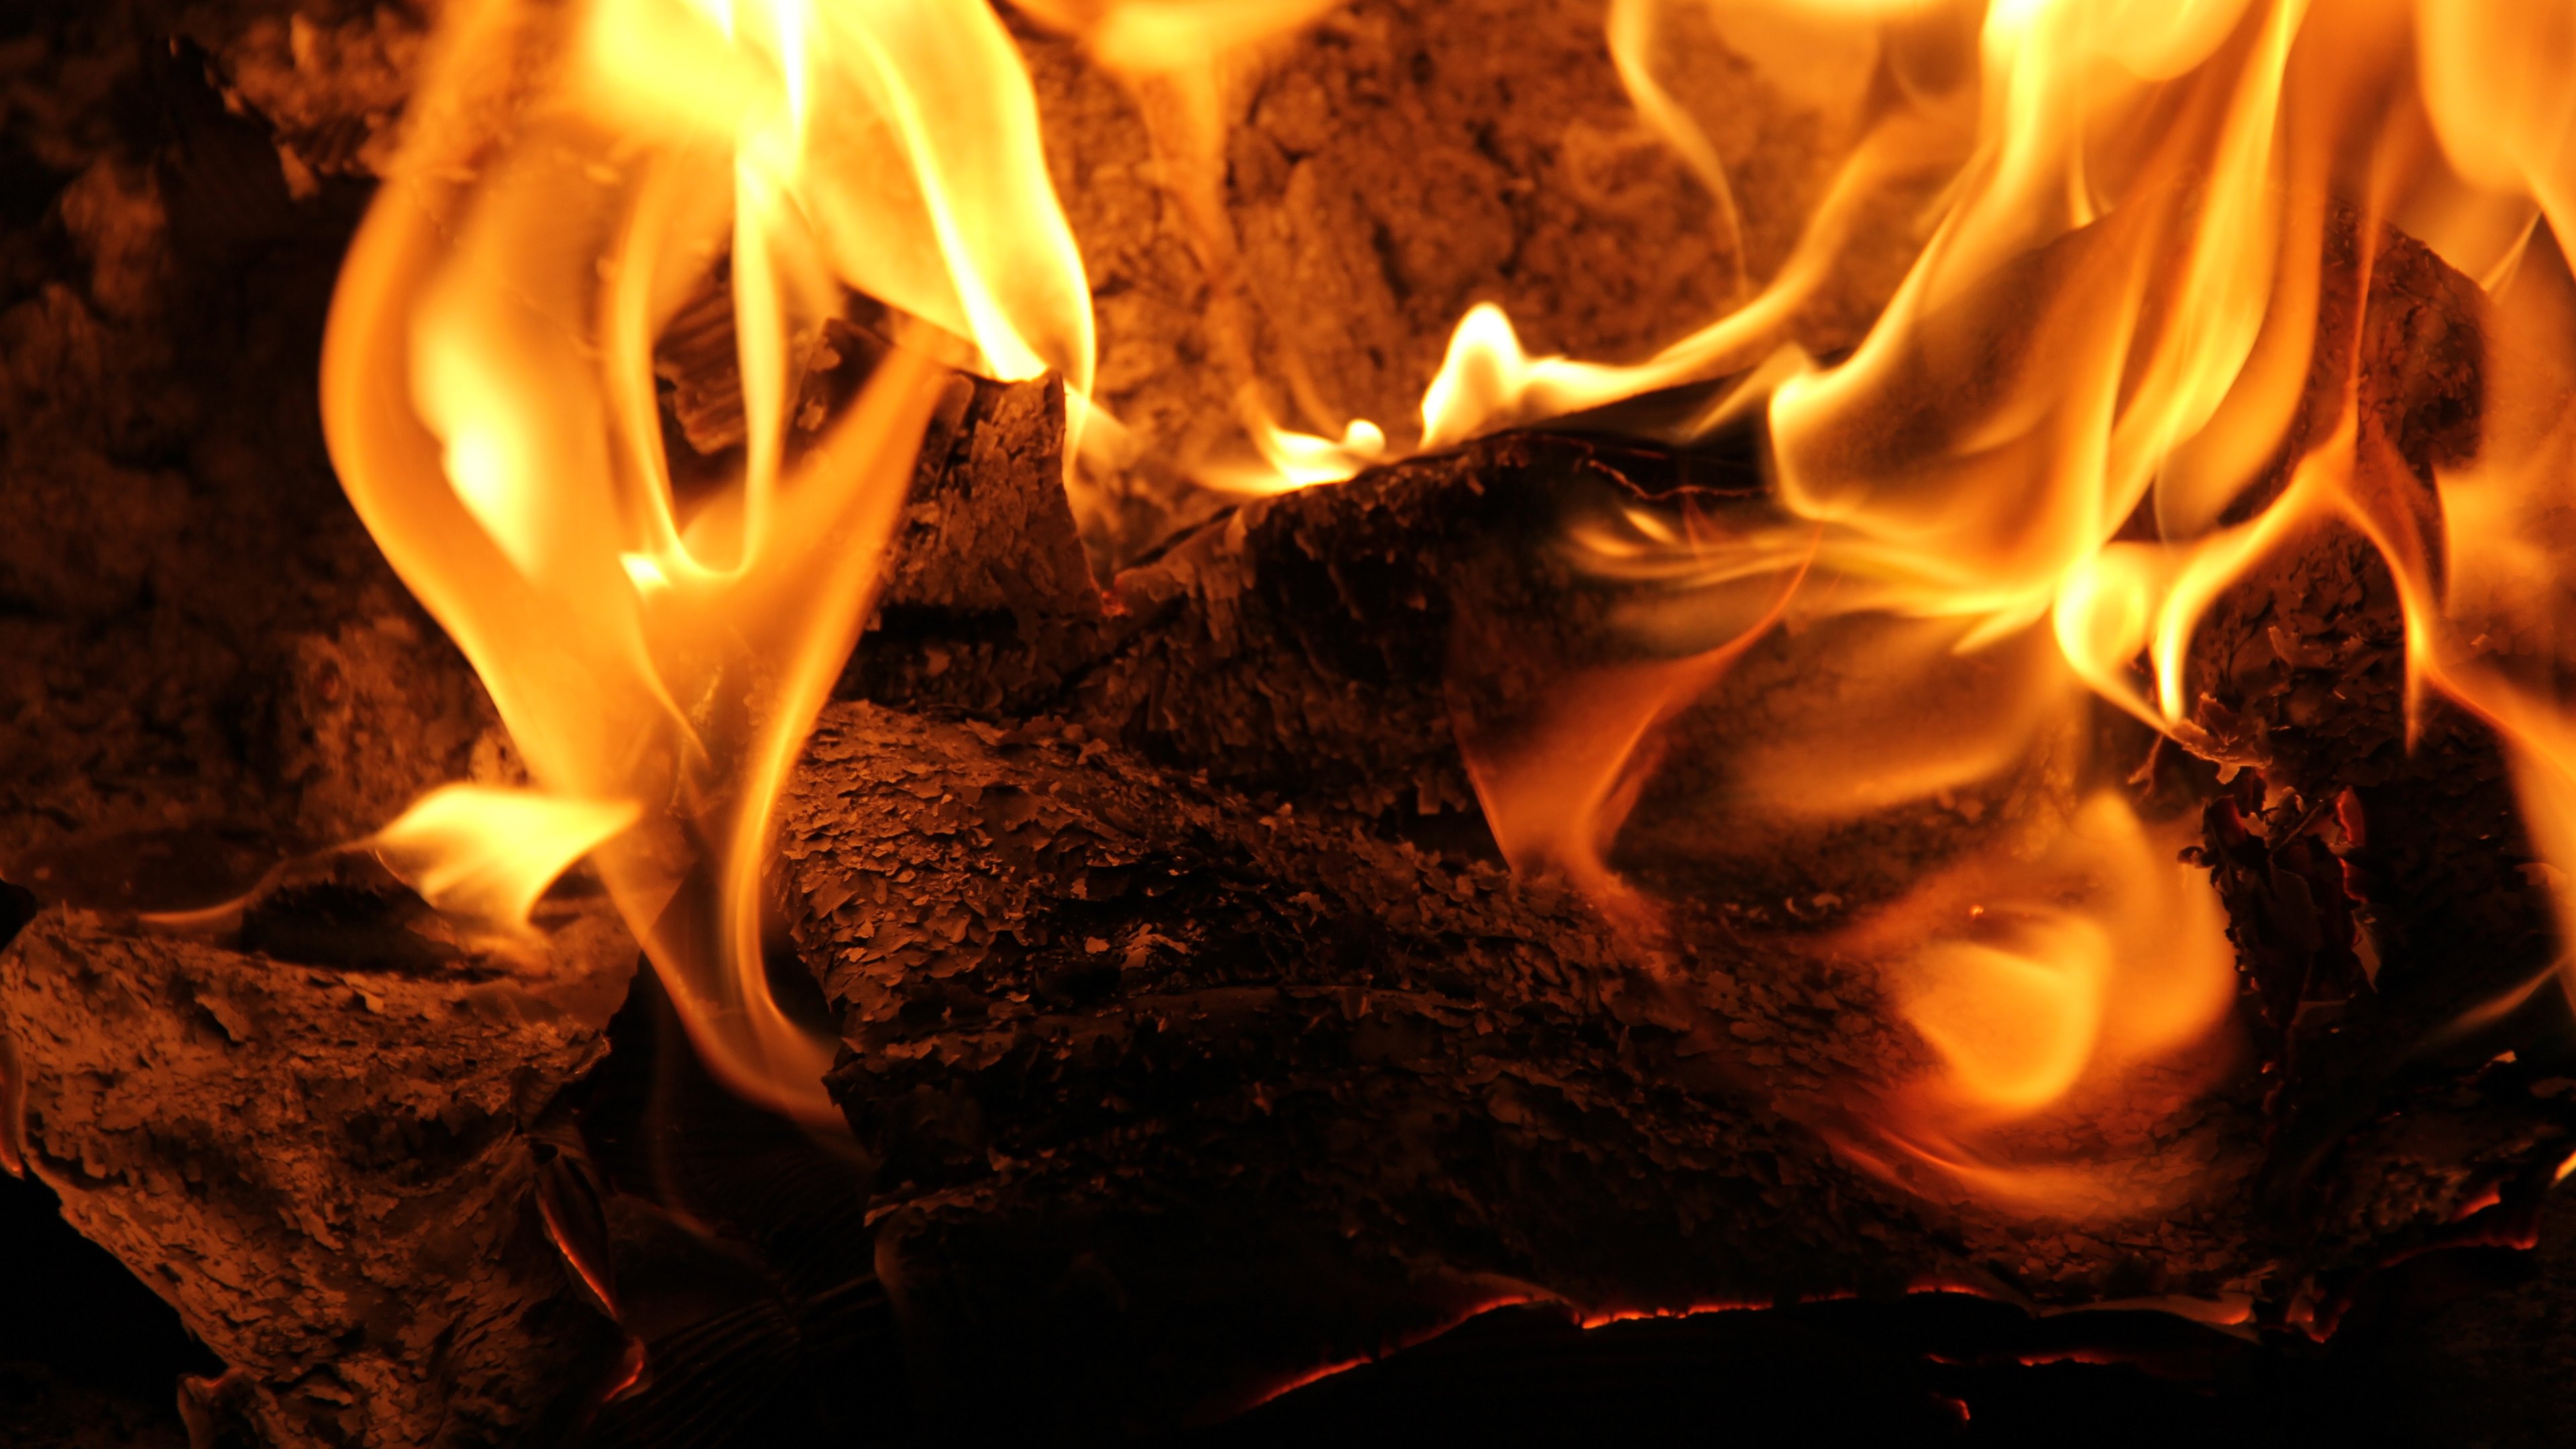 火の壁紙,火,火炎,熱,たき火,キャンプファイヤー